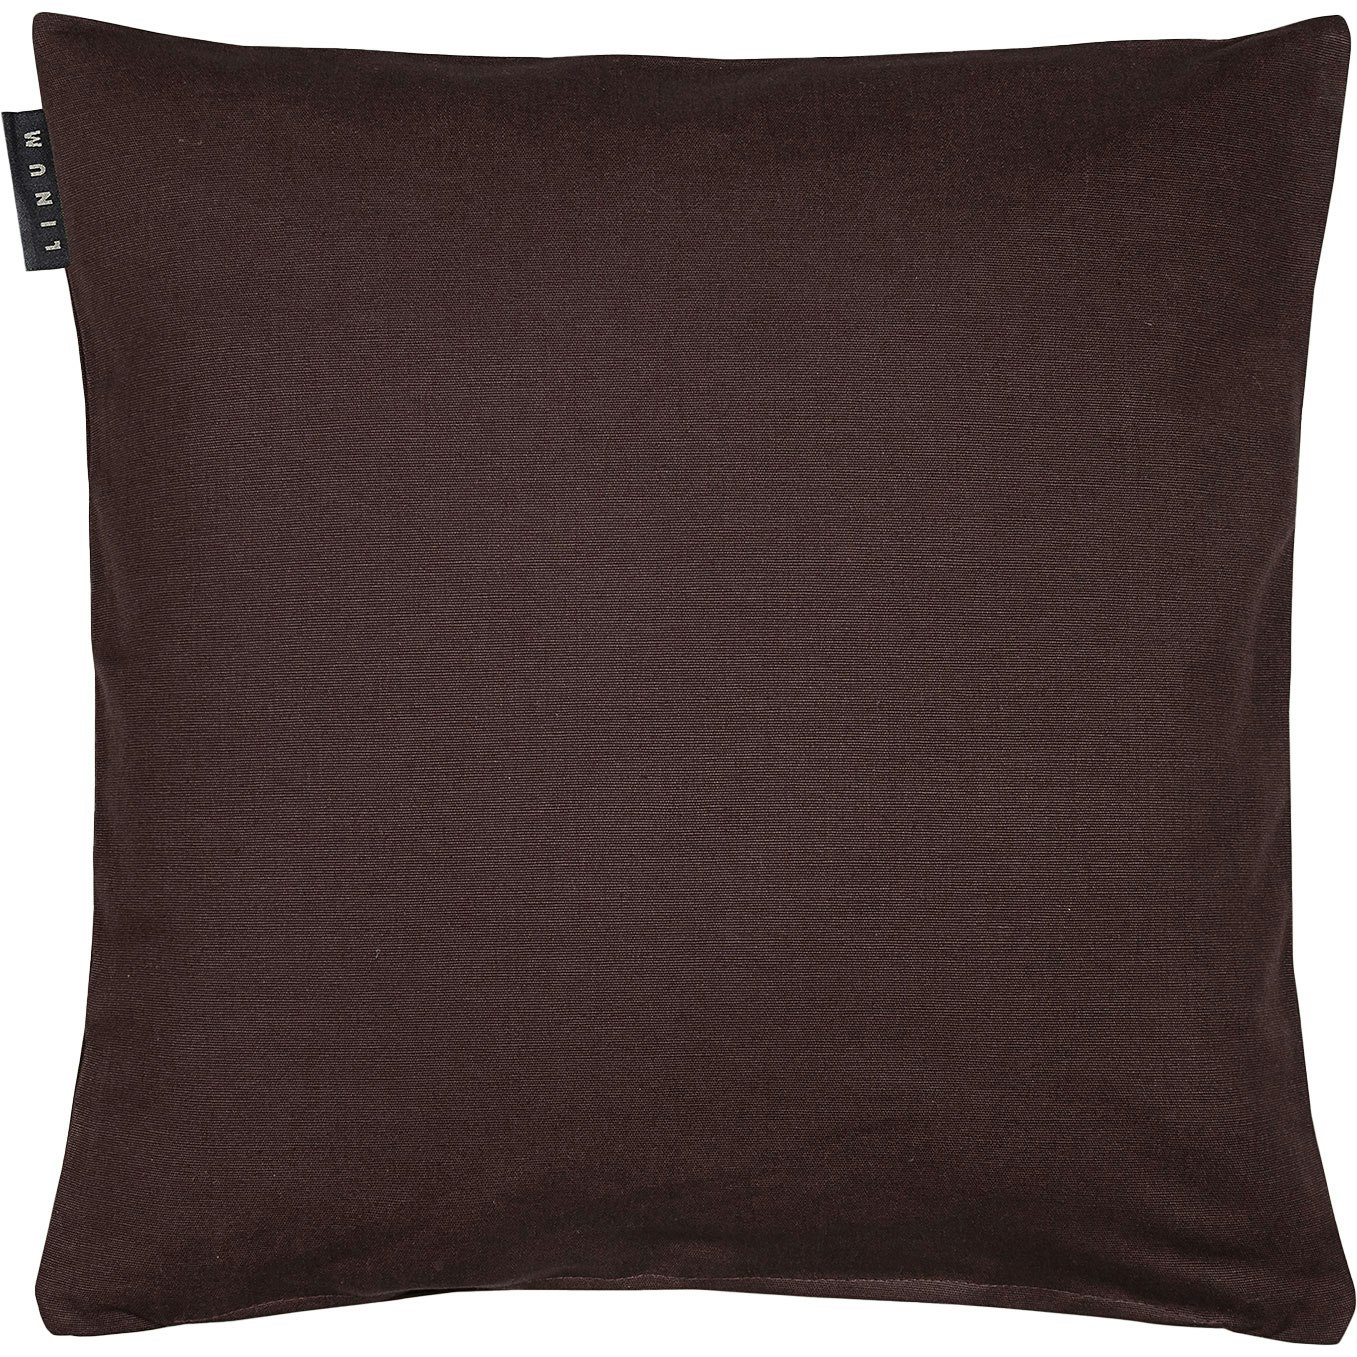 Annabelle Cushion Cover 40x40 cm, Dark Brown